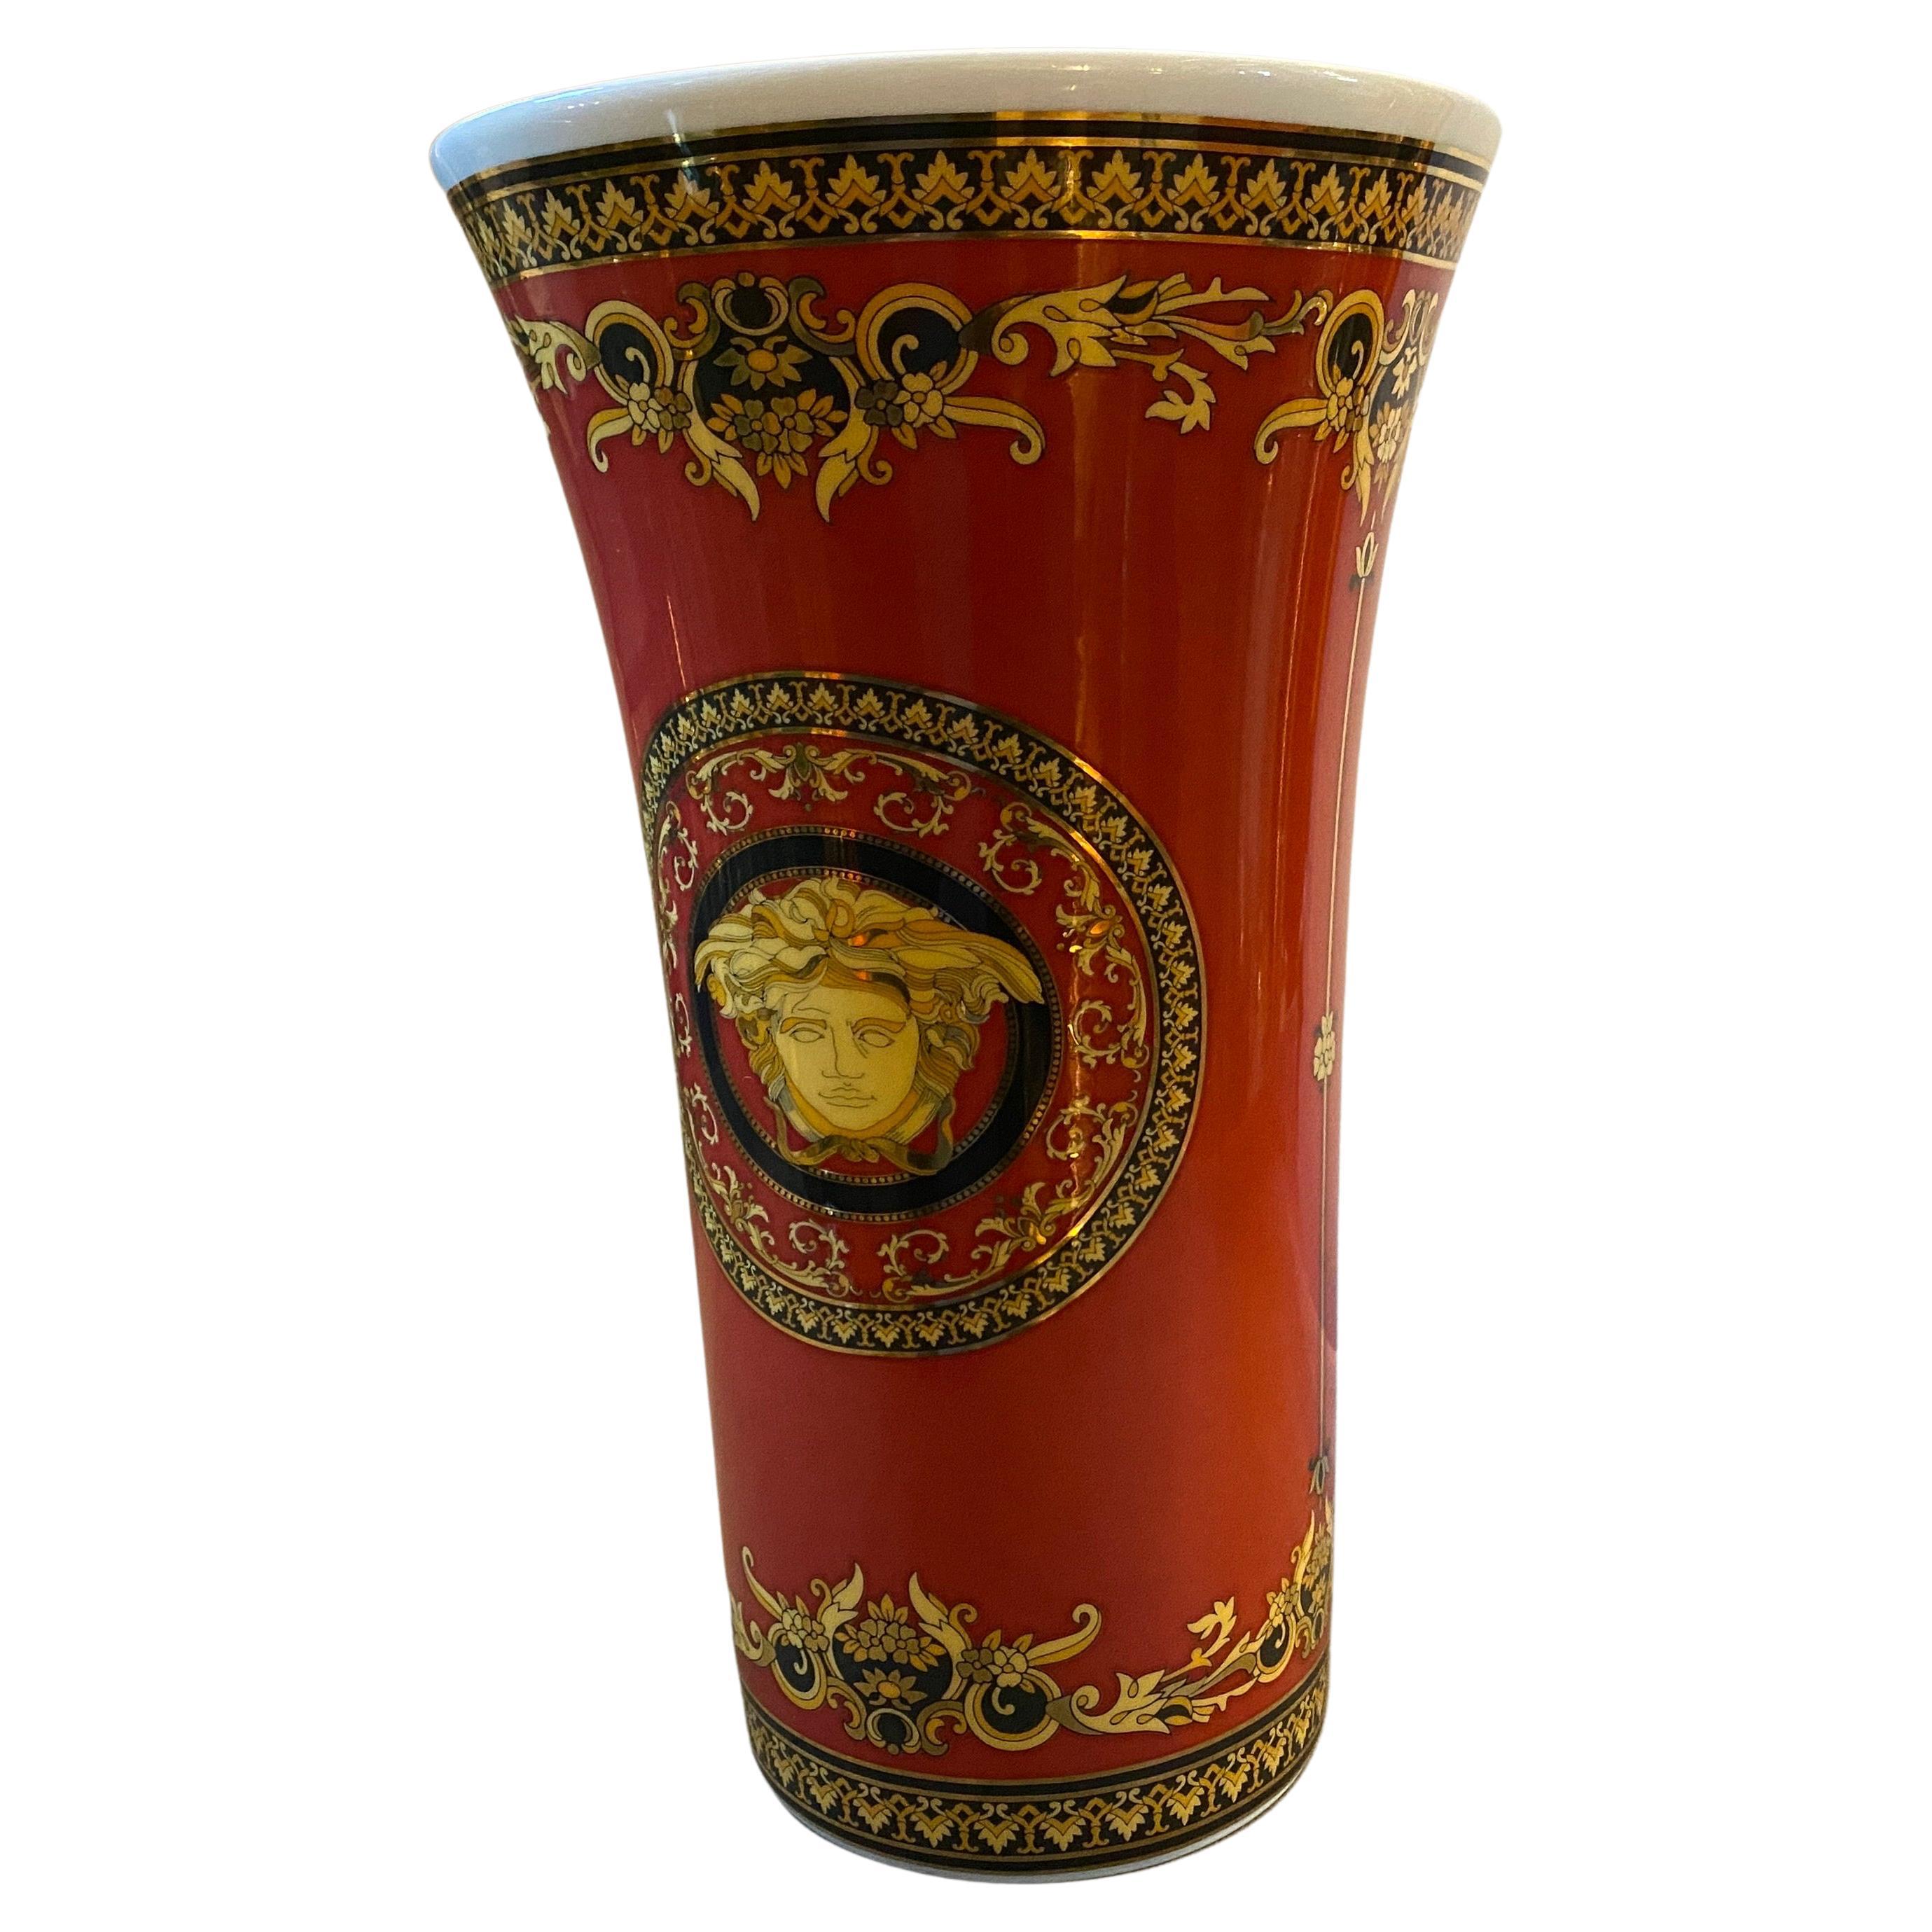 Vase en porcelaine rouge et or conçu par Gianni Versace et fabriqué par Rosenthal dans les années quatre-vingt-dix. Il est en parfait état, probablement jamais utilisé. La Méduse a toujours été utilisée par Gianni Versace et, aujourd'hui, elle est